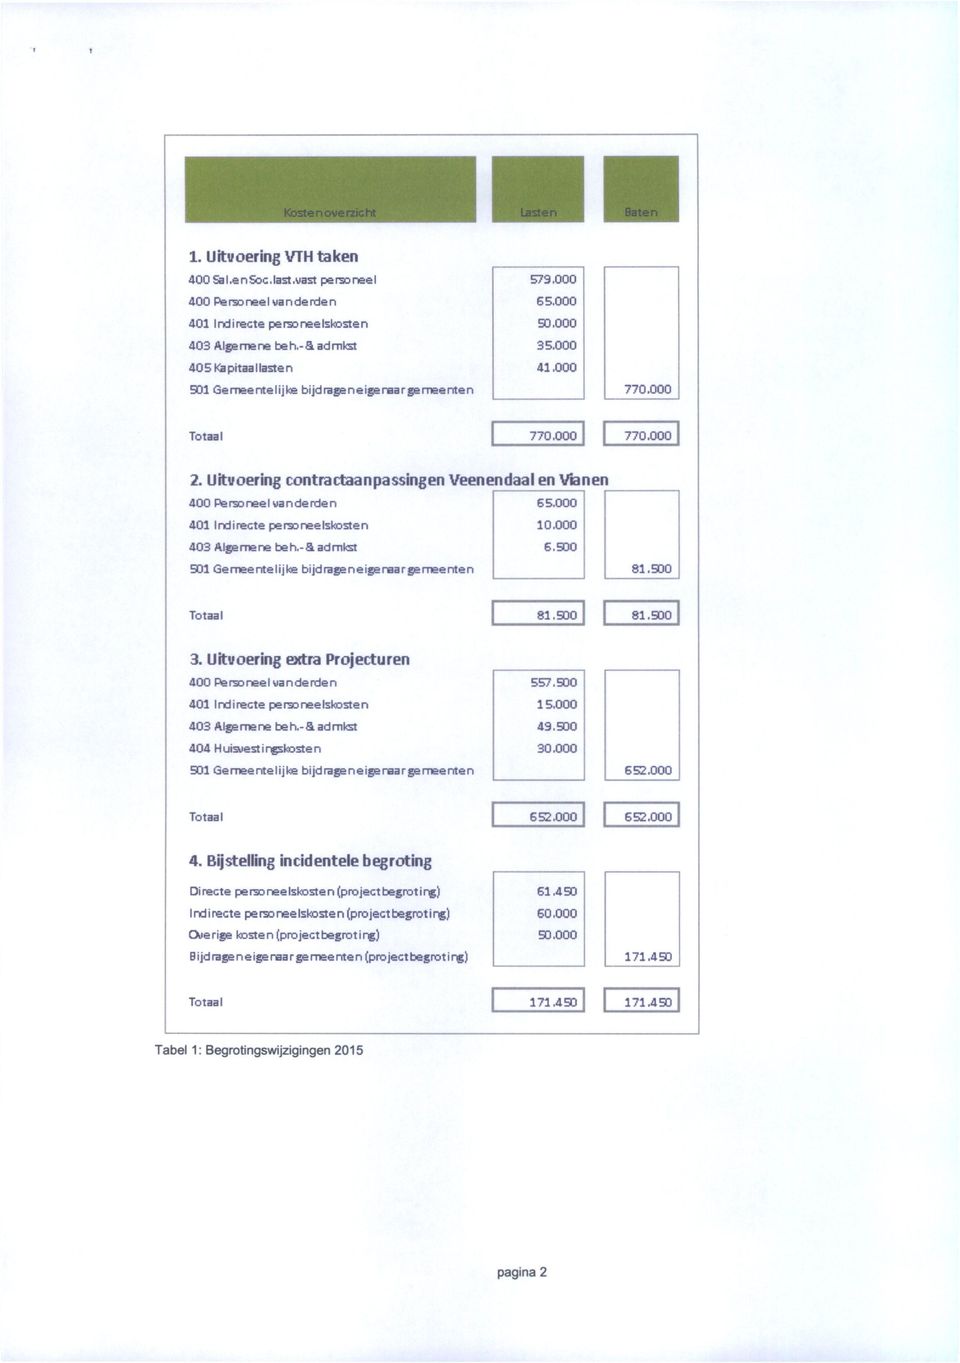 Uitvoering contractaanpassingen Veenendaal en Vianen 400Personeelvande nde n 65.000 401 Indirecte personeelskosten 10,000 403 Algemene beh.